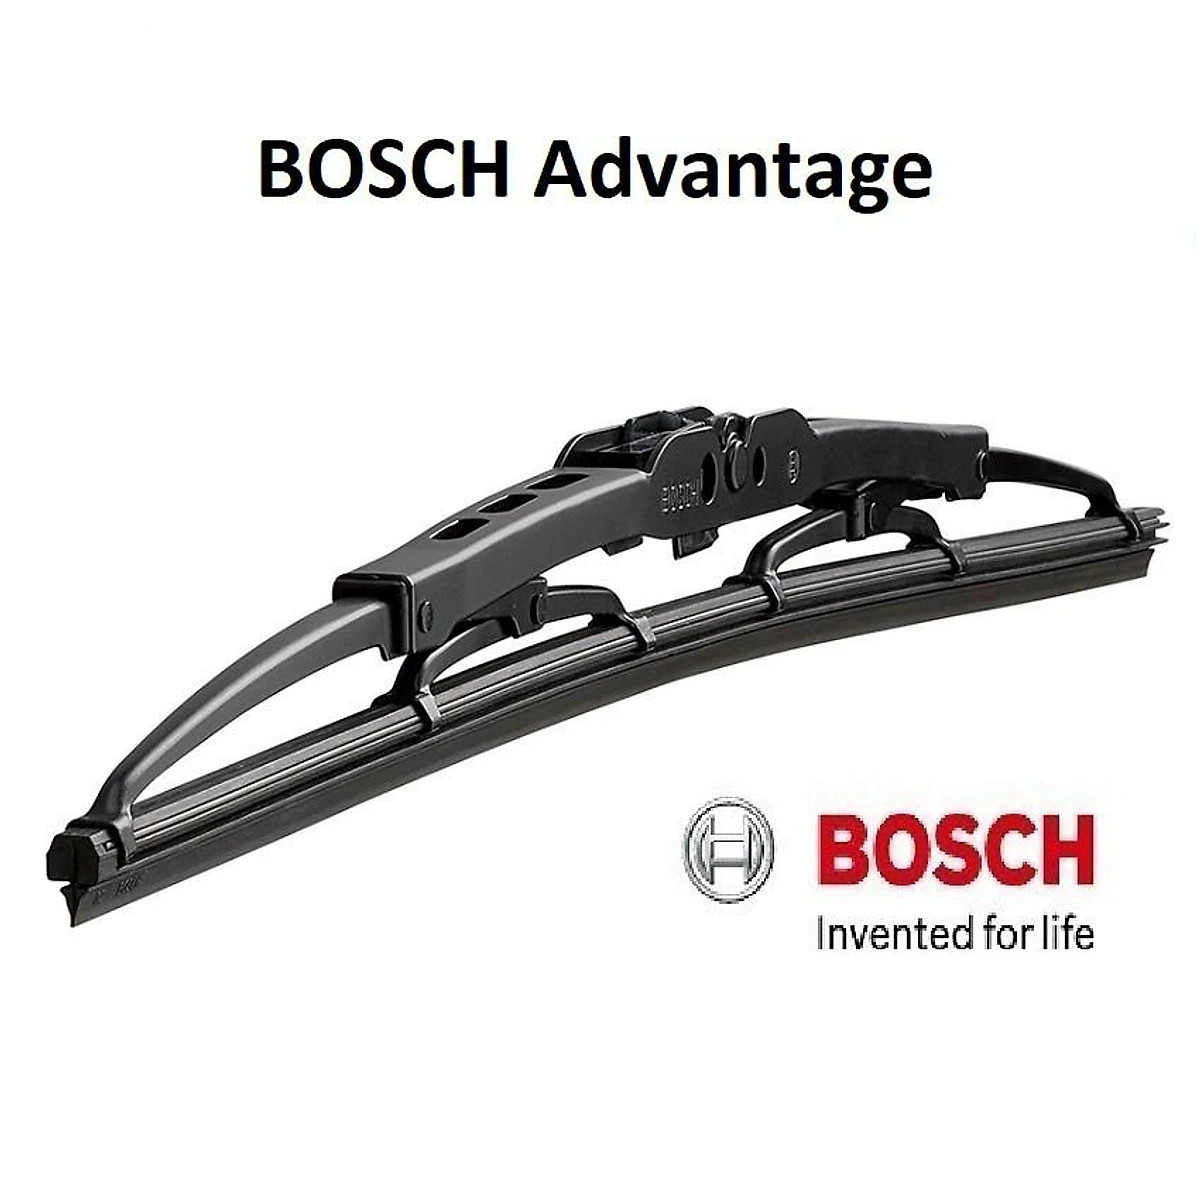 Gạt mưa Nissan X-Trail Bosch ADVANTAGE BA xương sắt hàng chính hãng - Bộ 2 cái